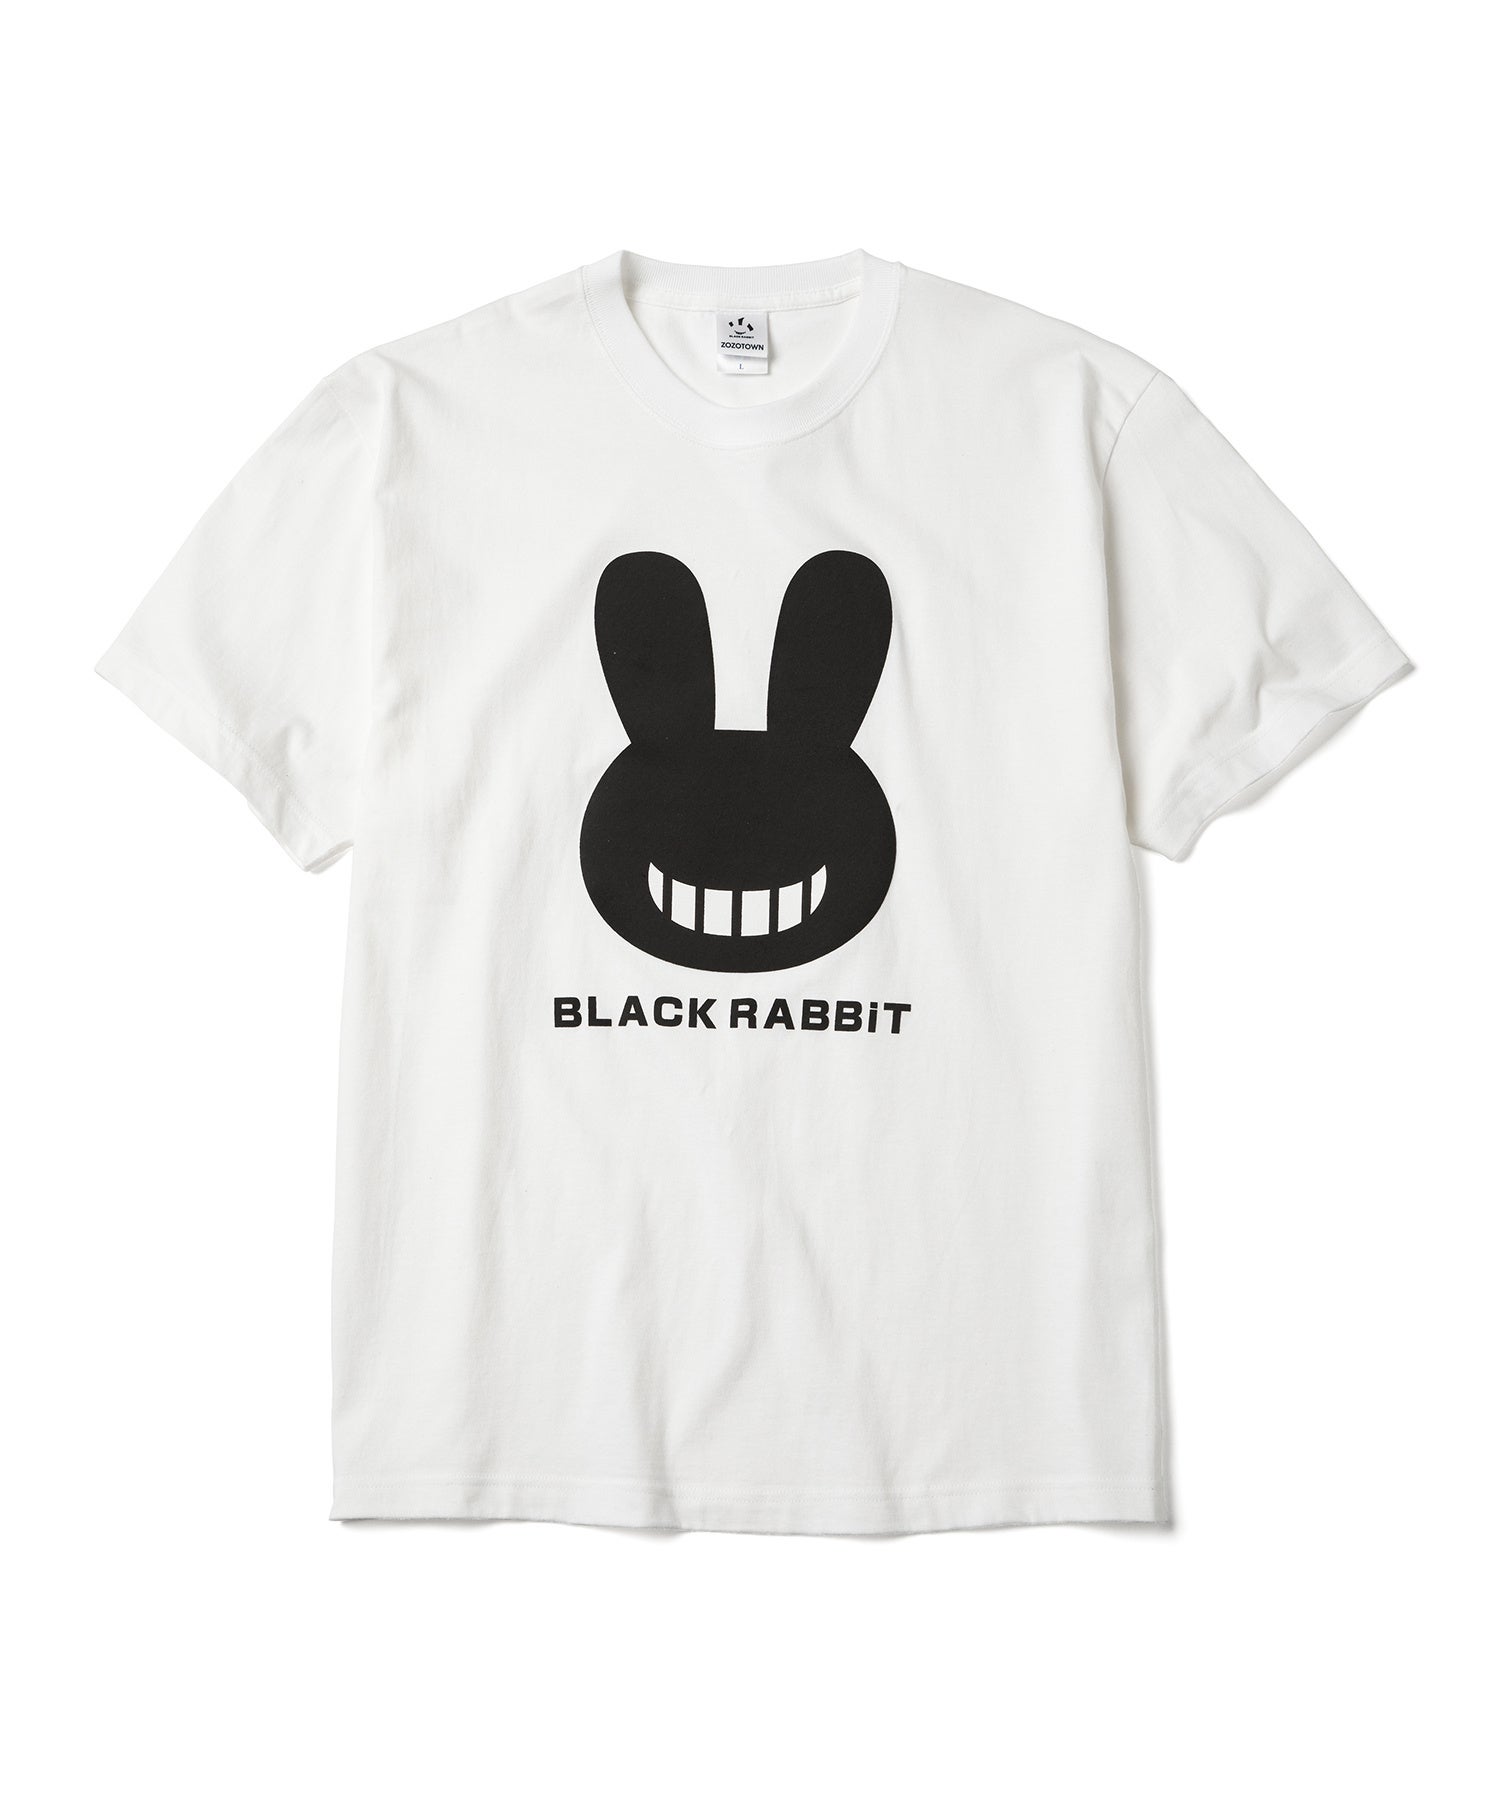 「にひひ…」と笑うウサギのアートトイ「BLACK RABBiT」とZOZOTOWNがコラボレーションした限定コレクションを6...